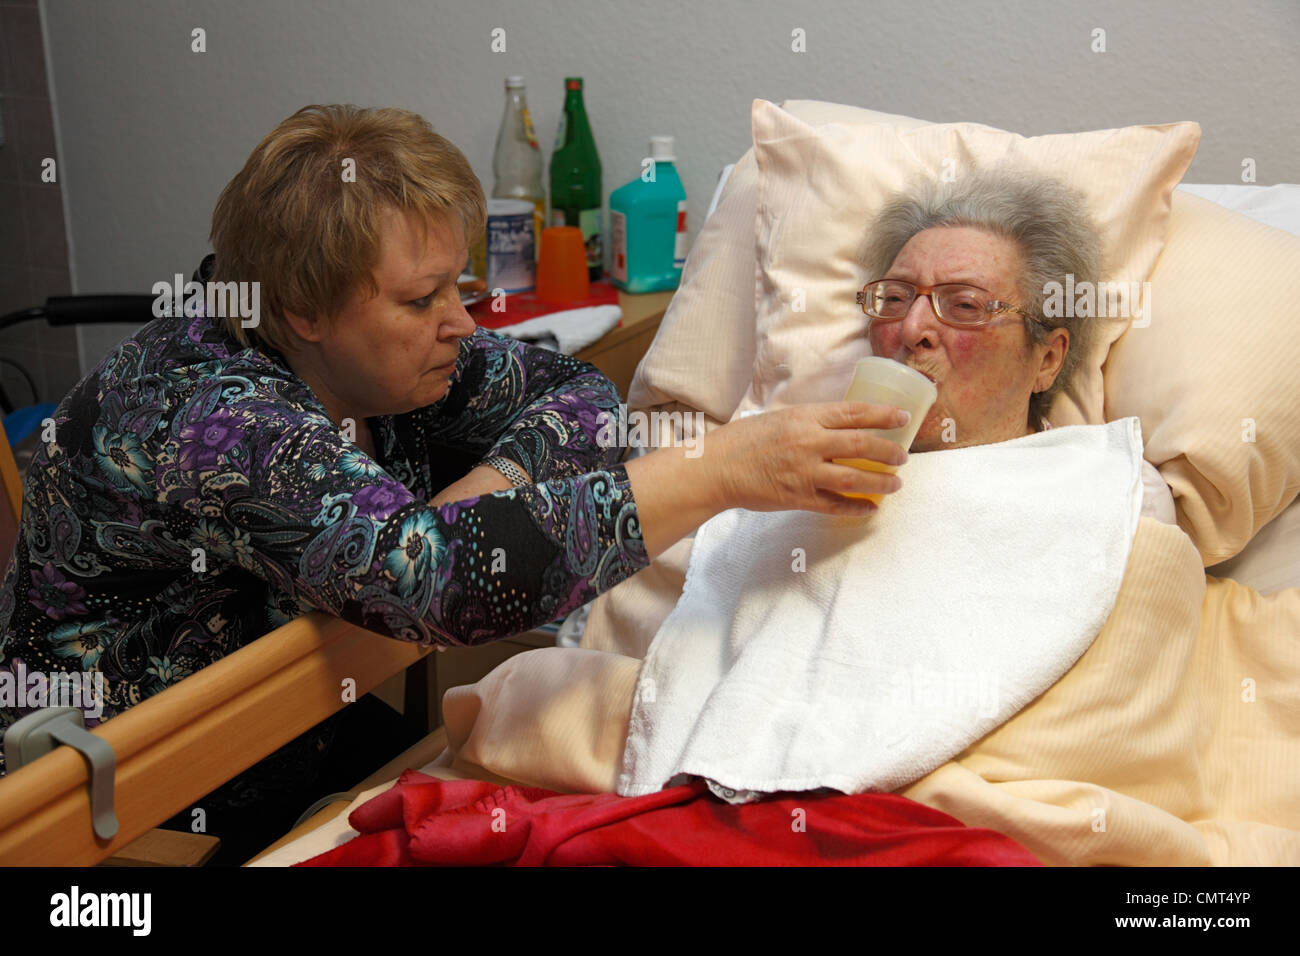 La gente, la vecchiaia, la casa di riposo, Altenzentrum der St. Clemens Hospitale in Sterkrade, donna anziana giace in un sickbed, di età compresa tra i 70 e 85 anni, un handicap fisico, la demenza malattia, infermiere detiene una coppa di alimentazione e aiuta a bere, di età compresa tra i 50 e i 60 anni, Waltraut Foto Stock